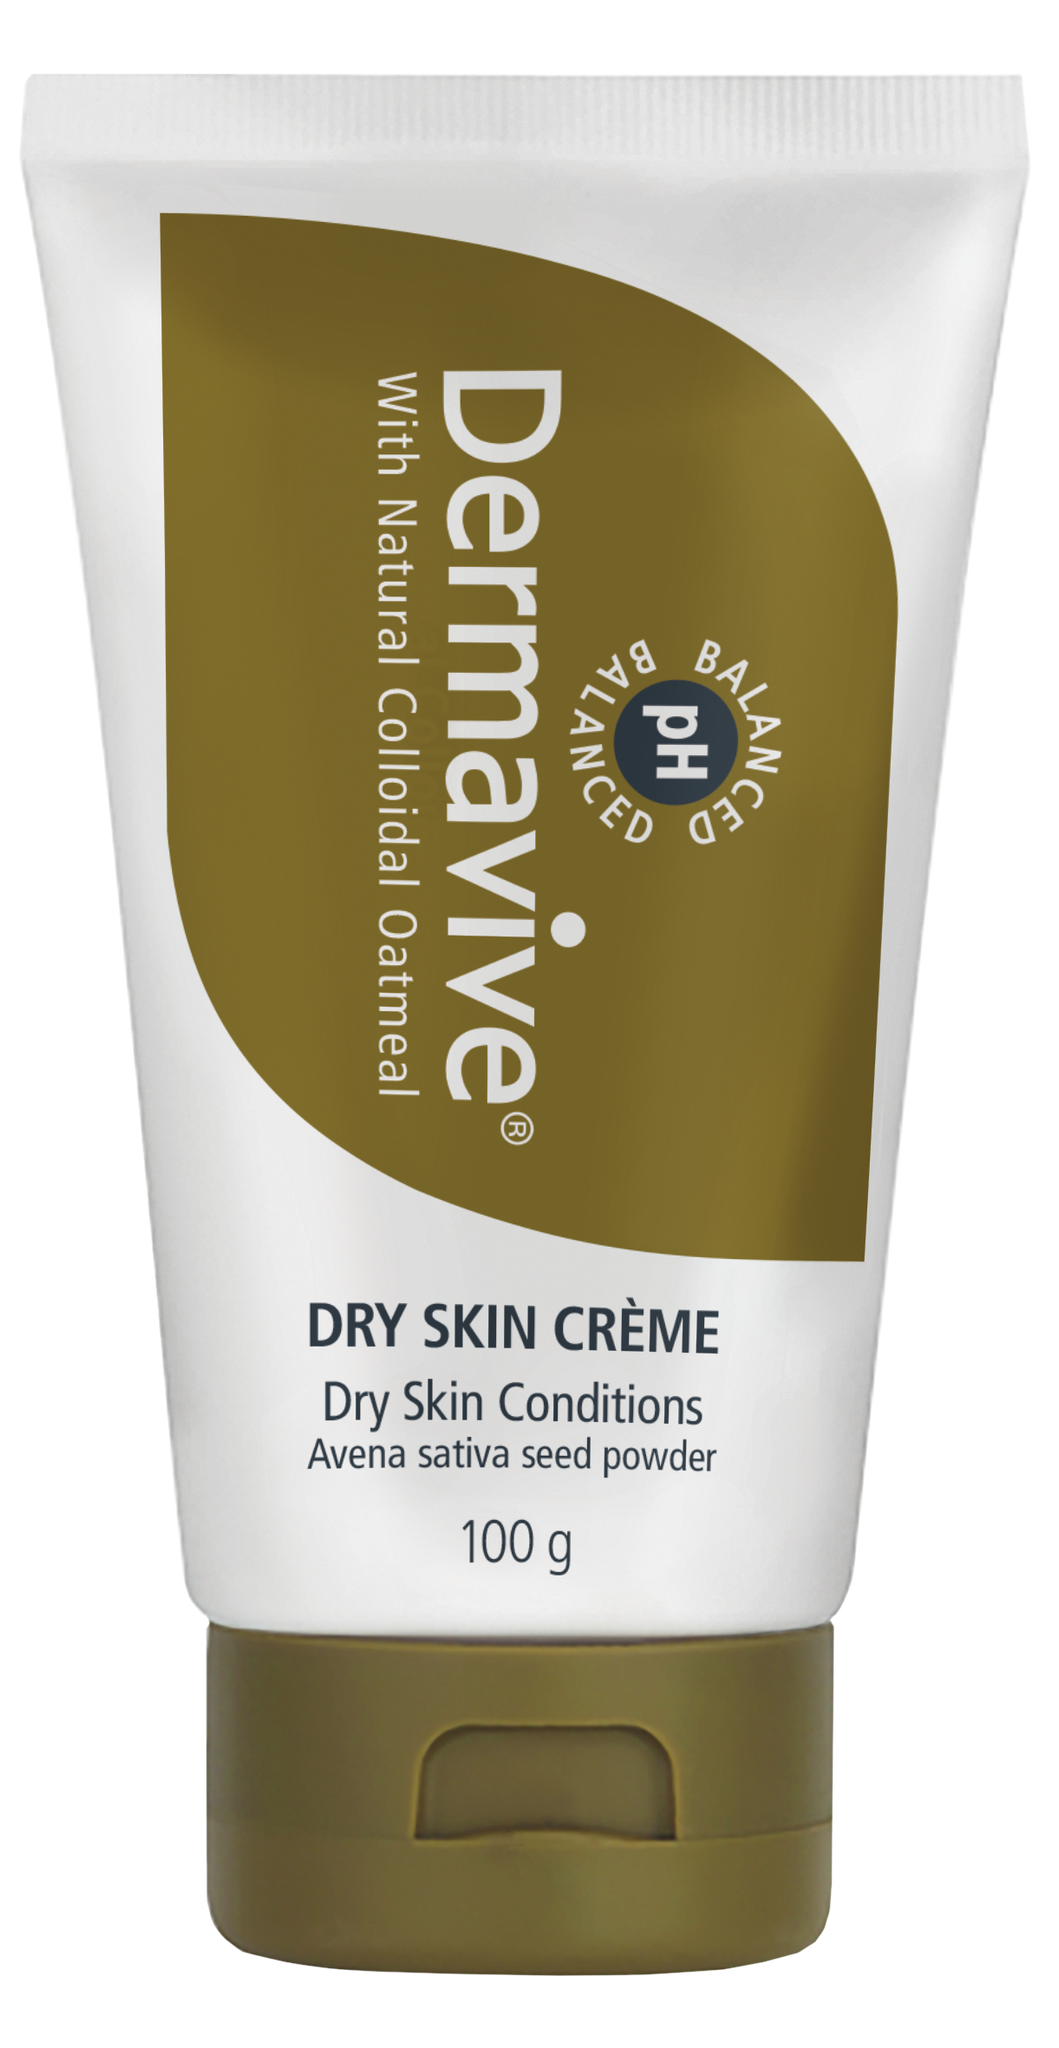 Dry Skin Creme 100g